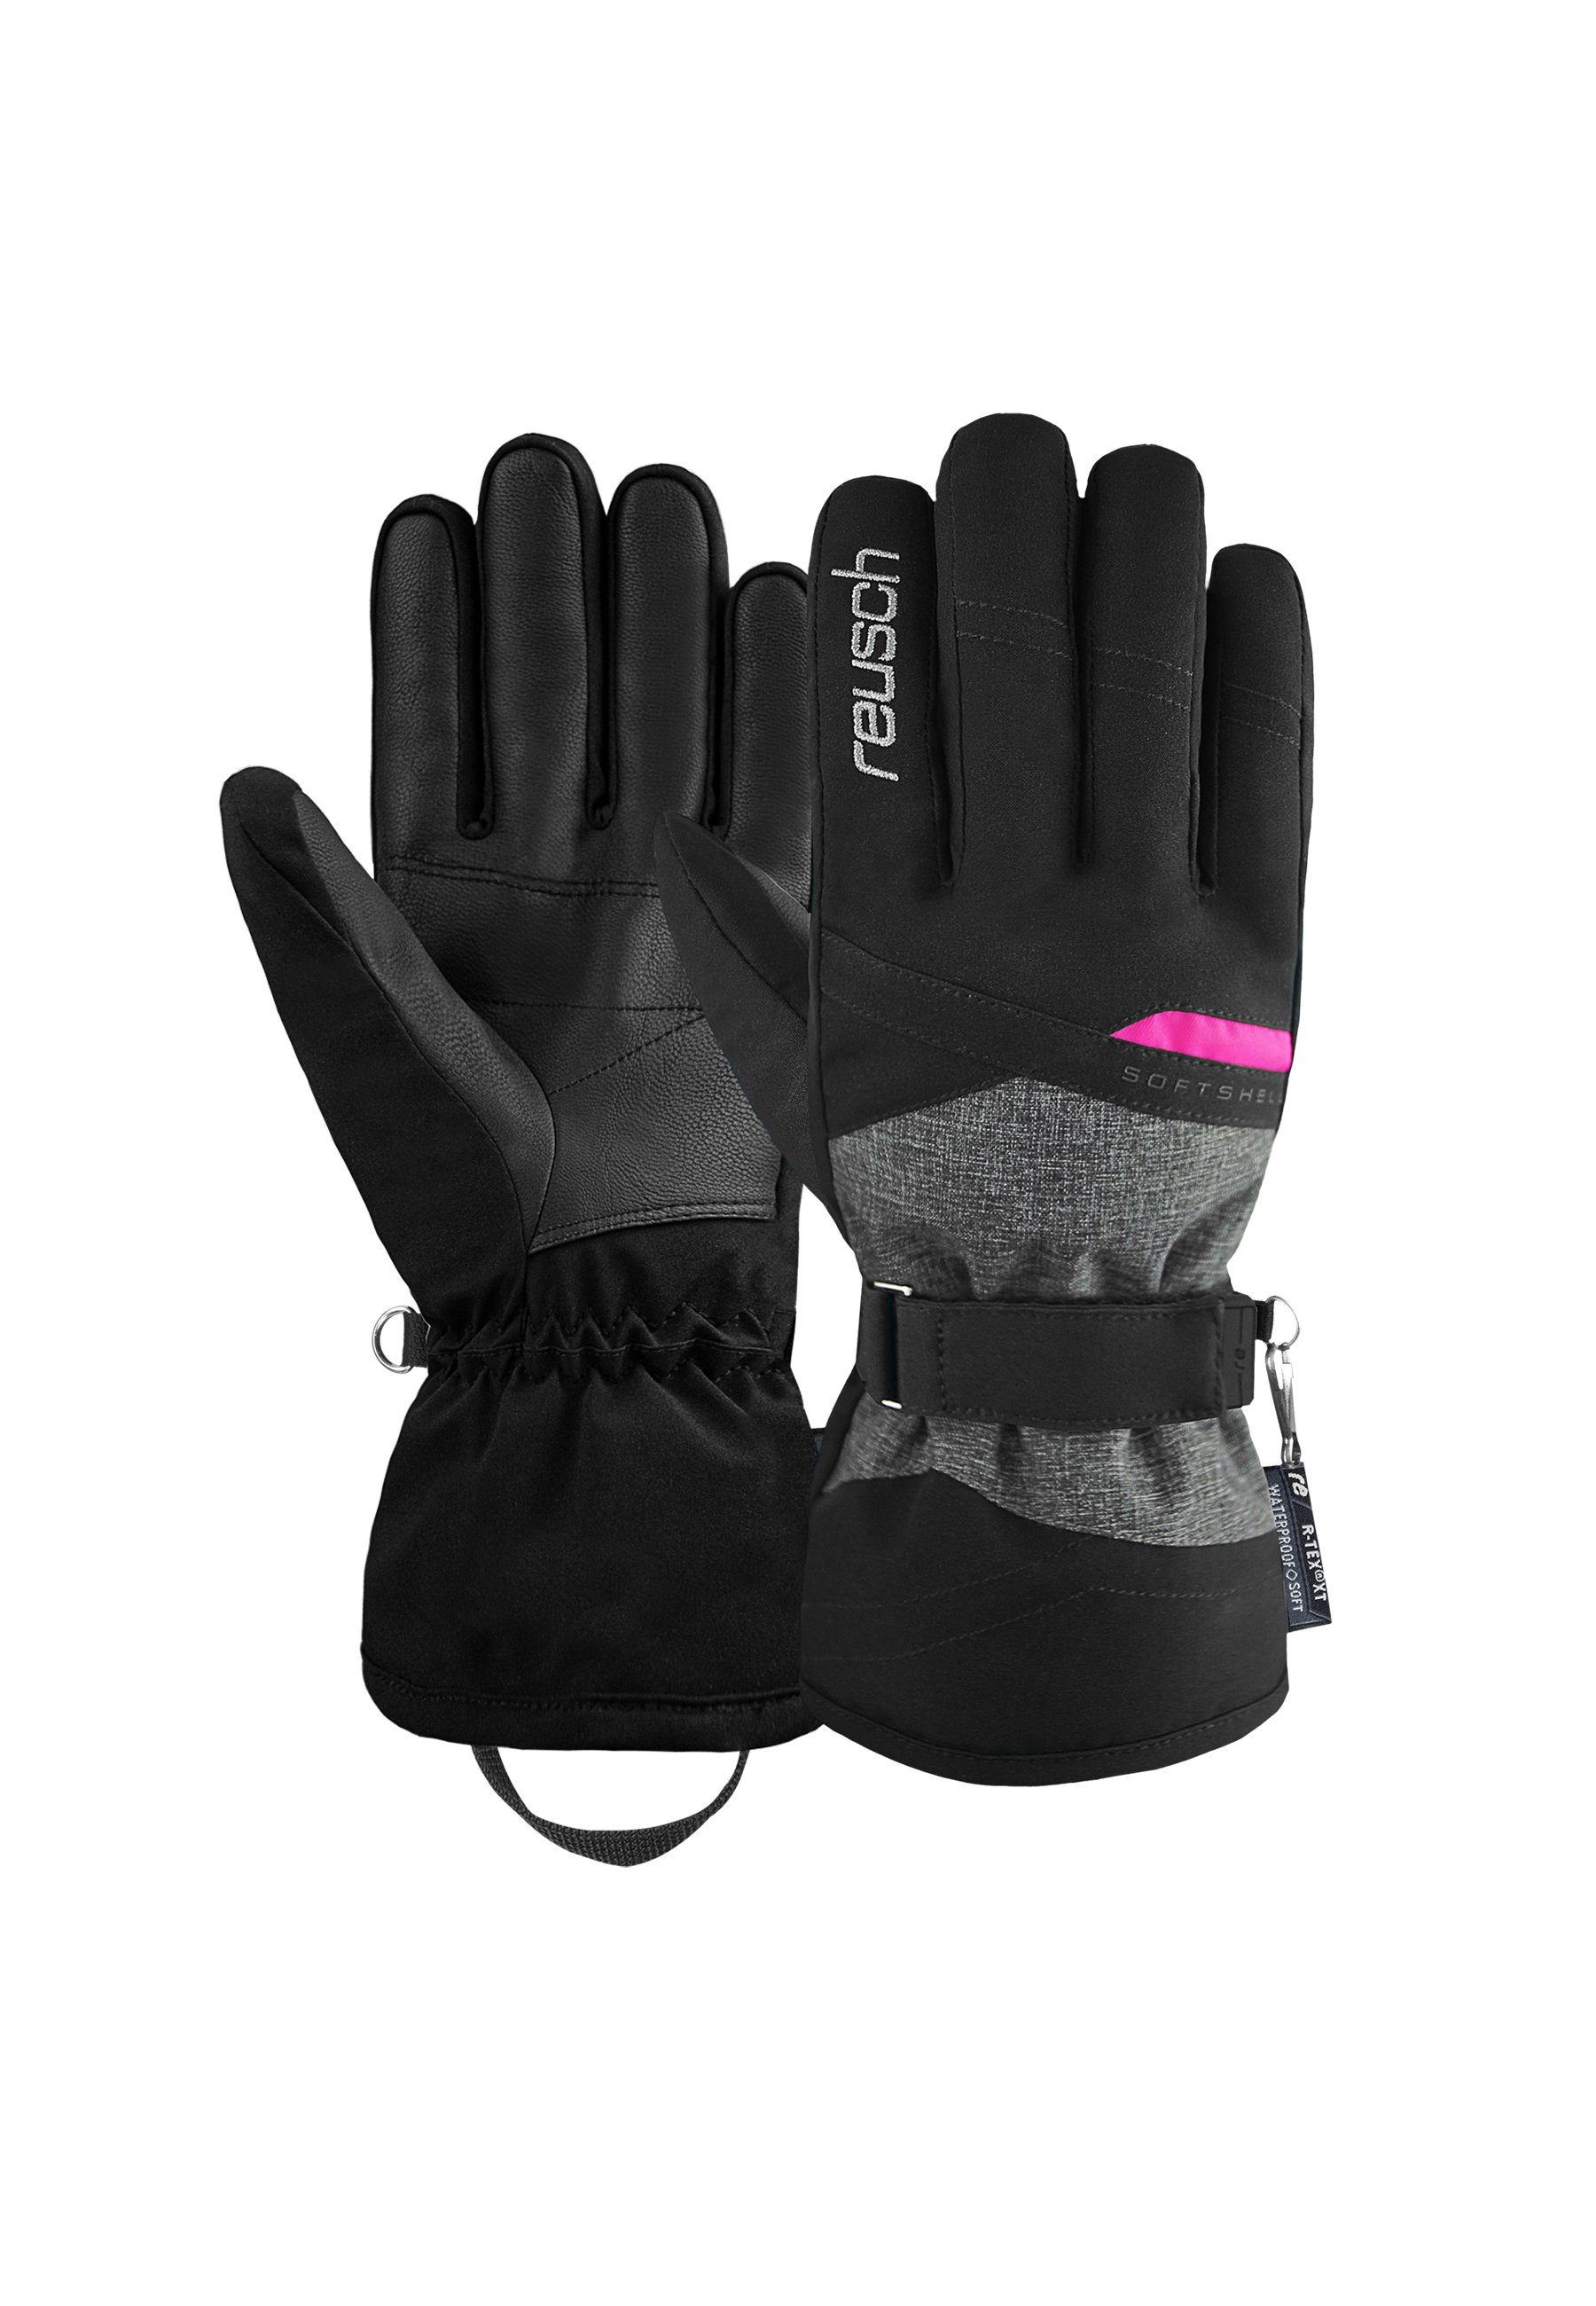 Reusch Skihandschuhe Hellen R-TEX XT mit PRIMALOFT-Isolation grau-schwarz | Handschuhe